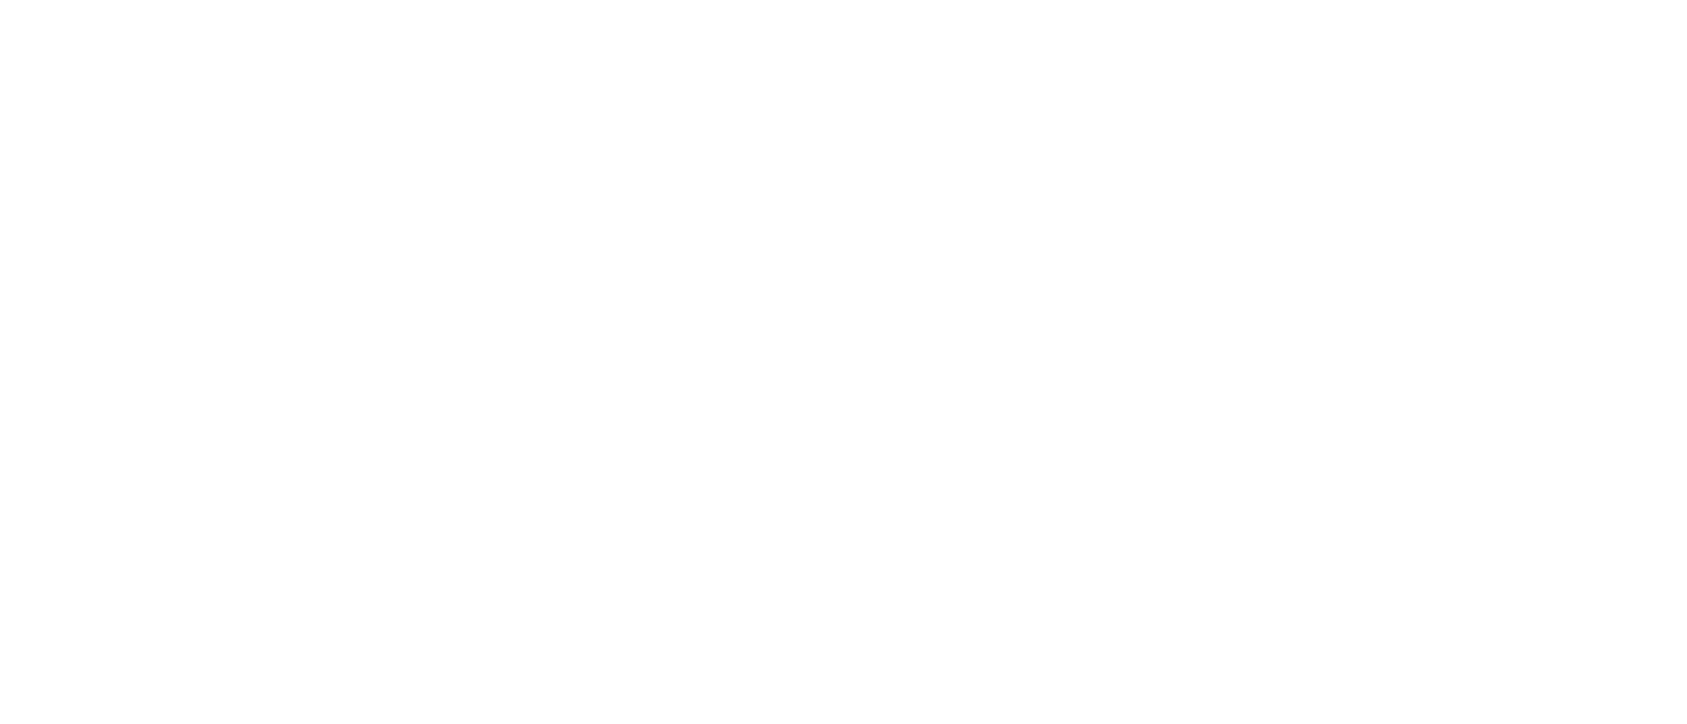 kenchii logo